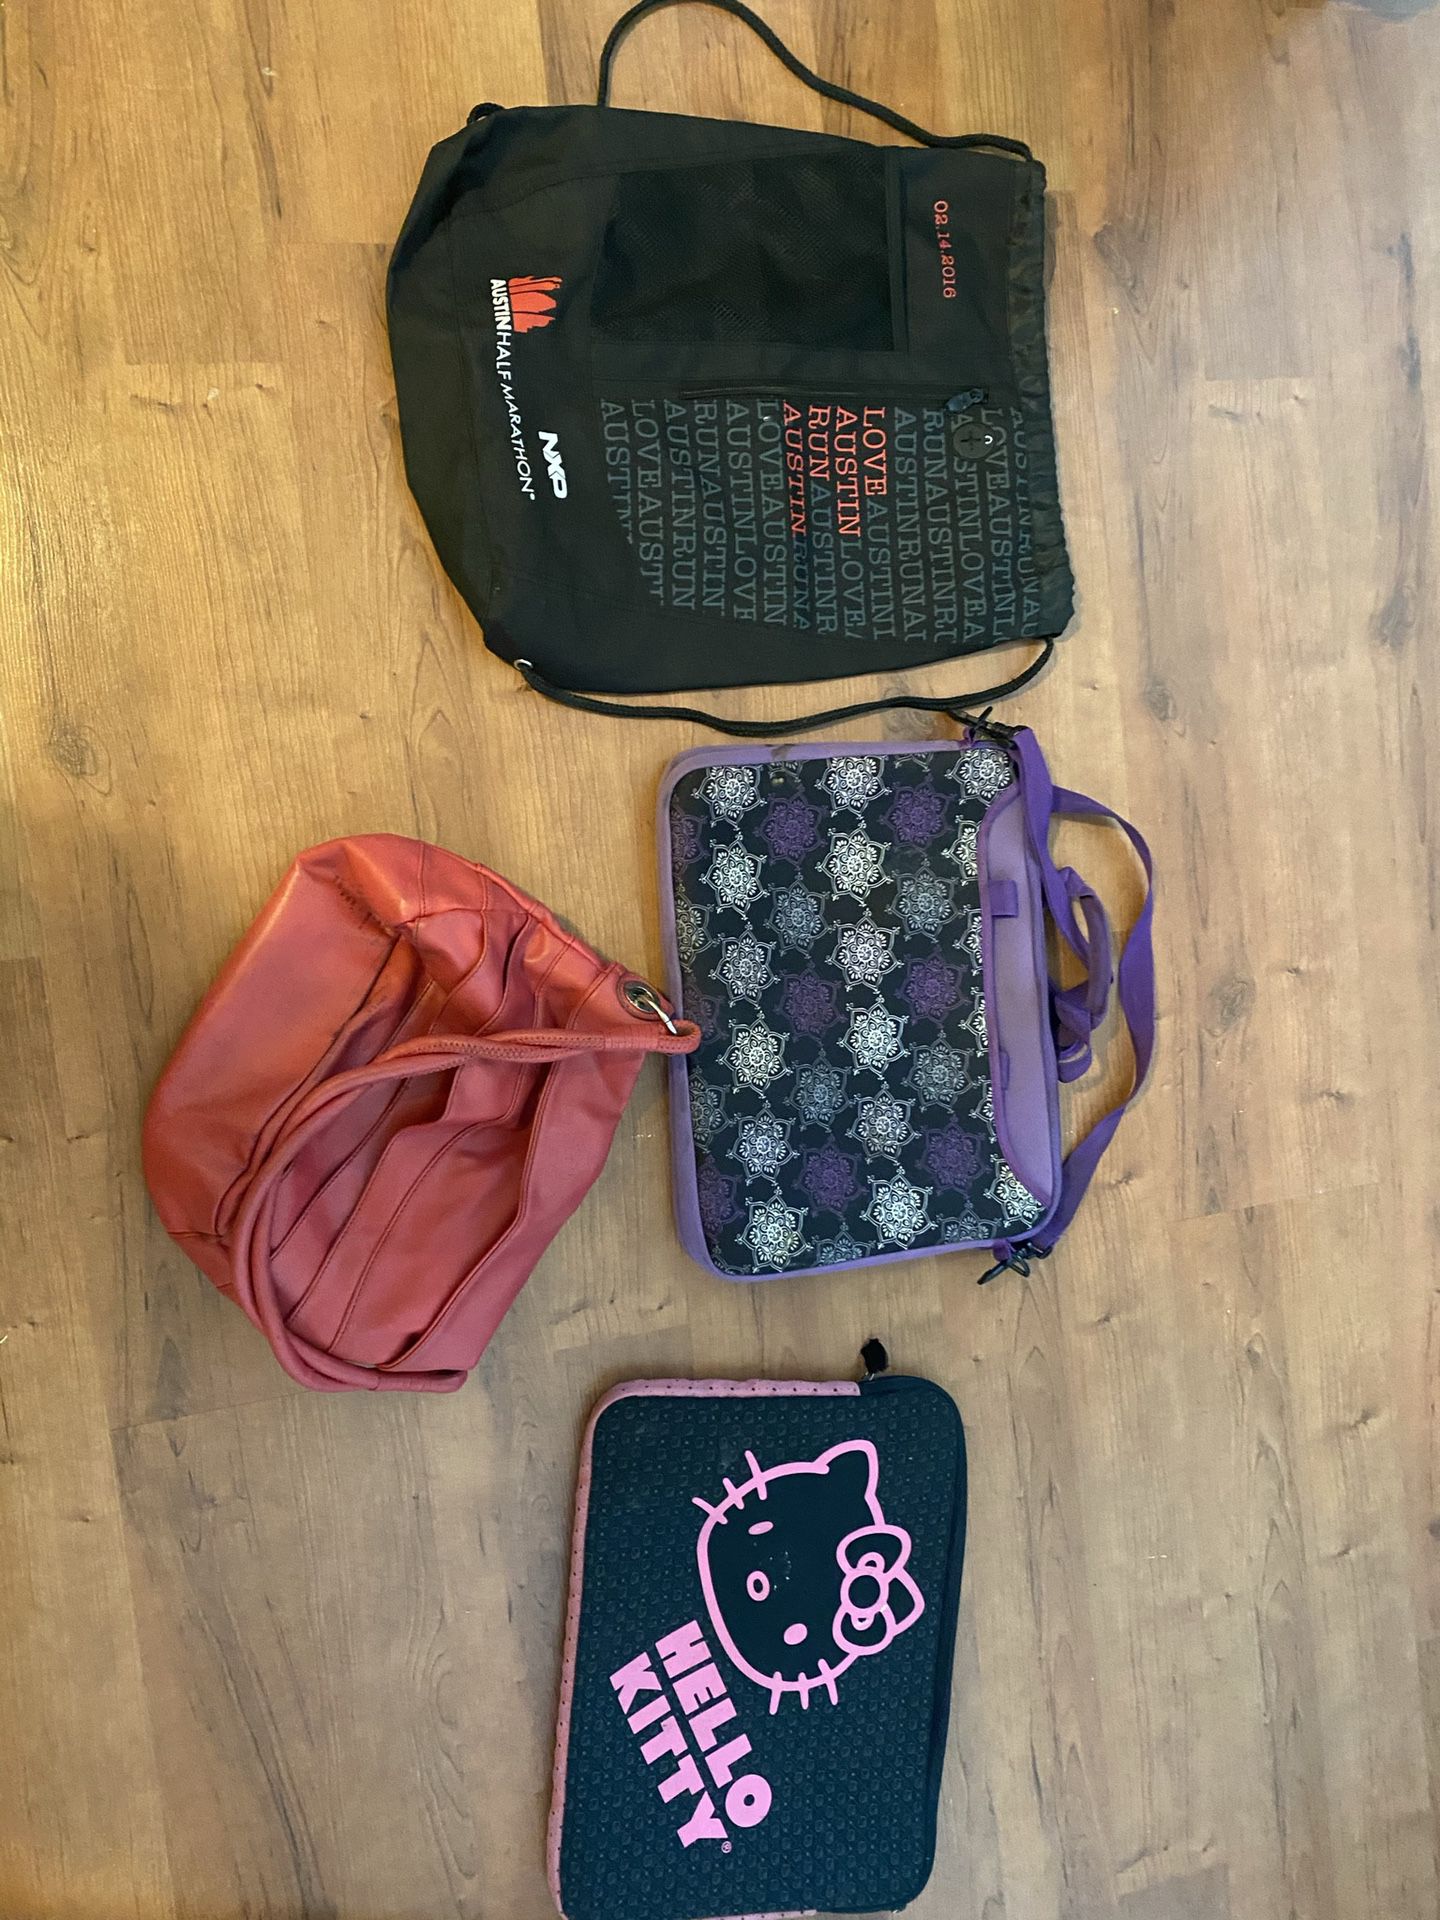 Laptop bags/purse